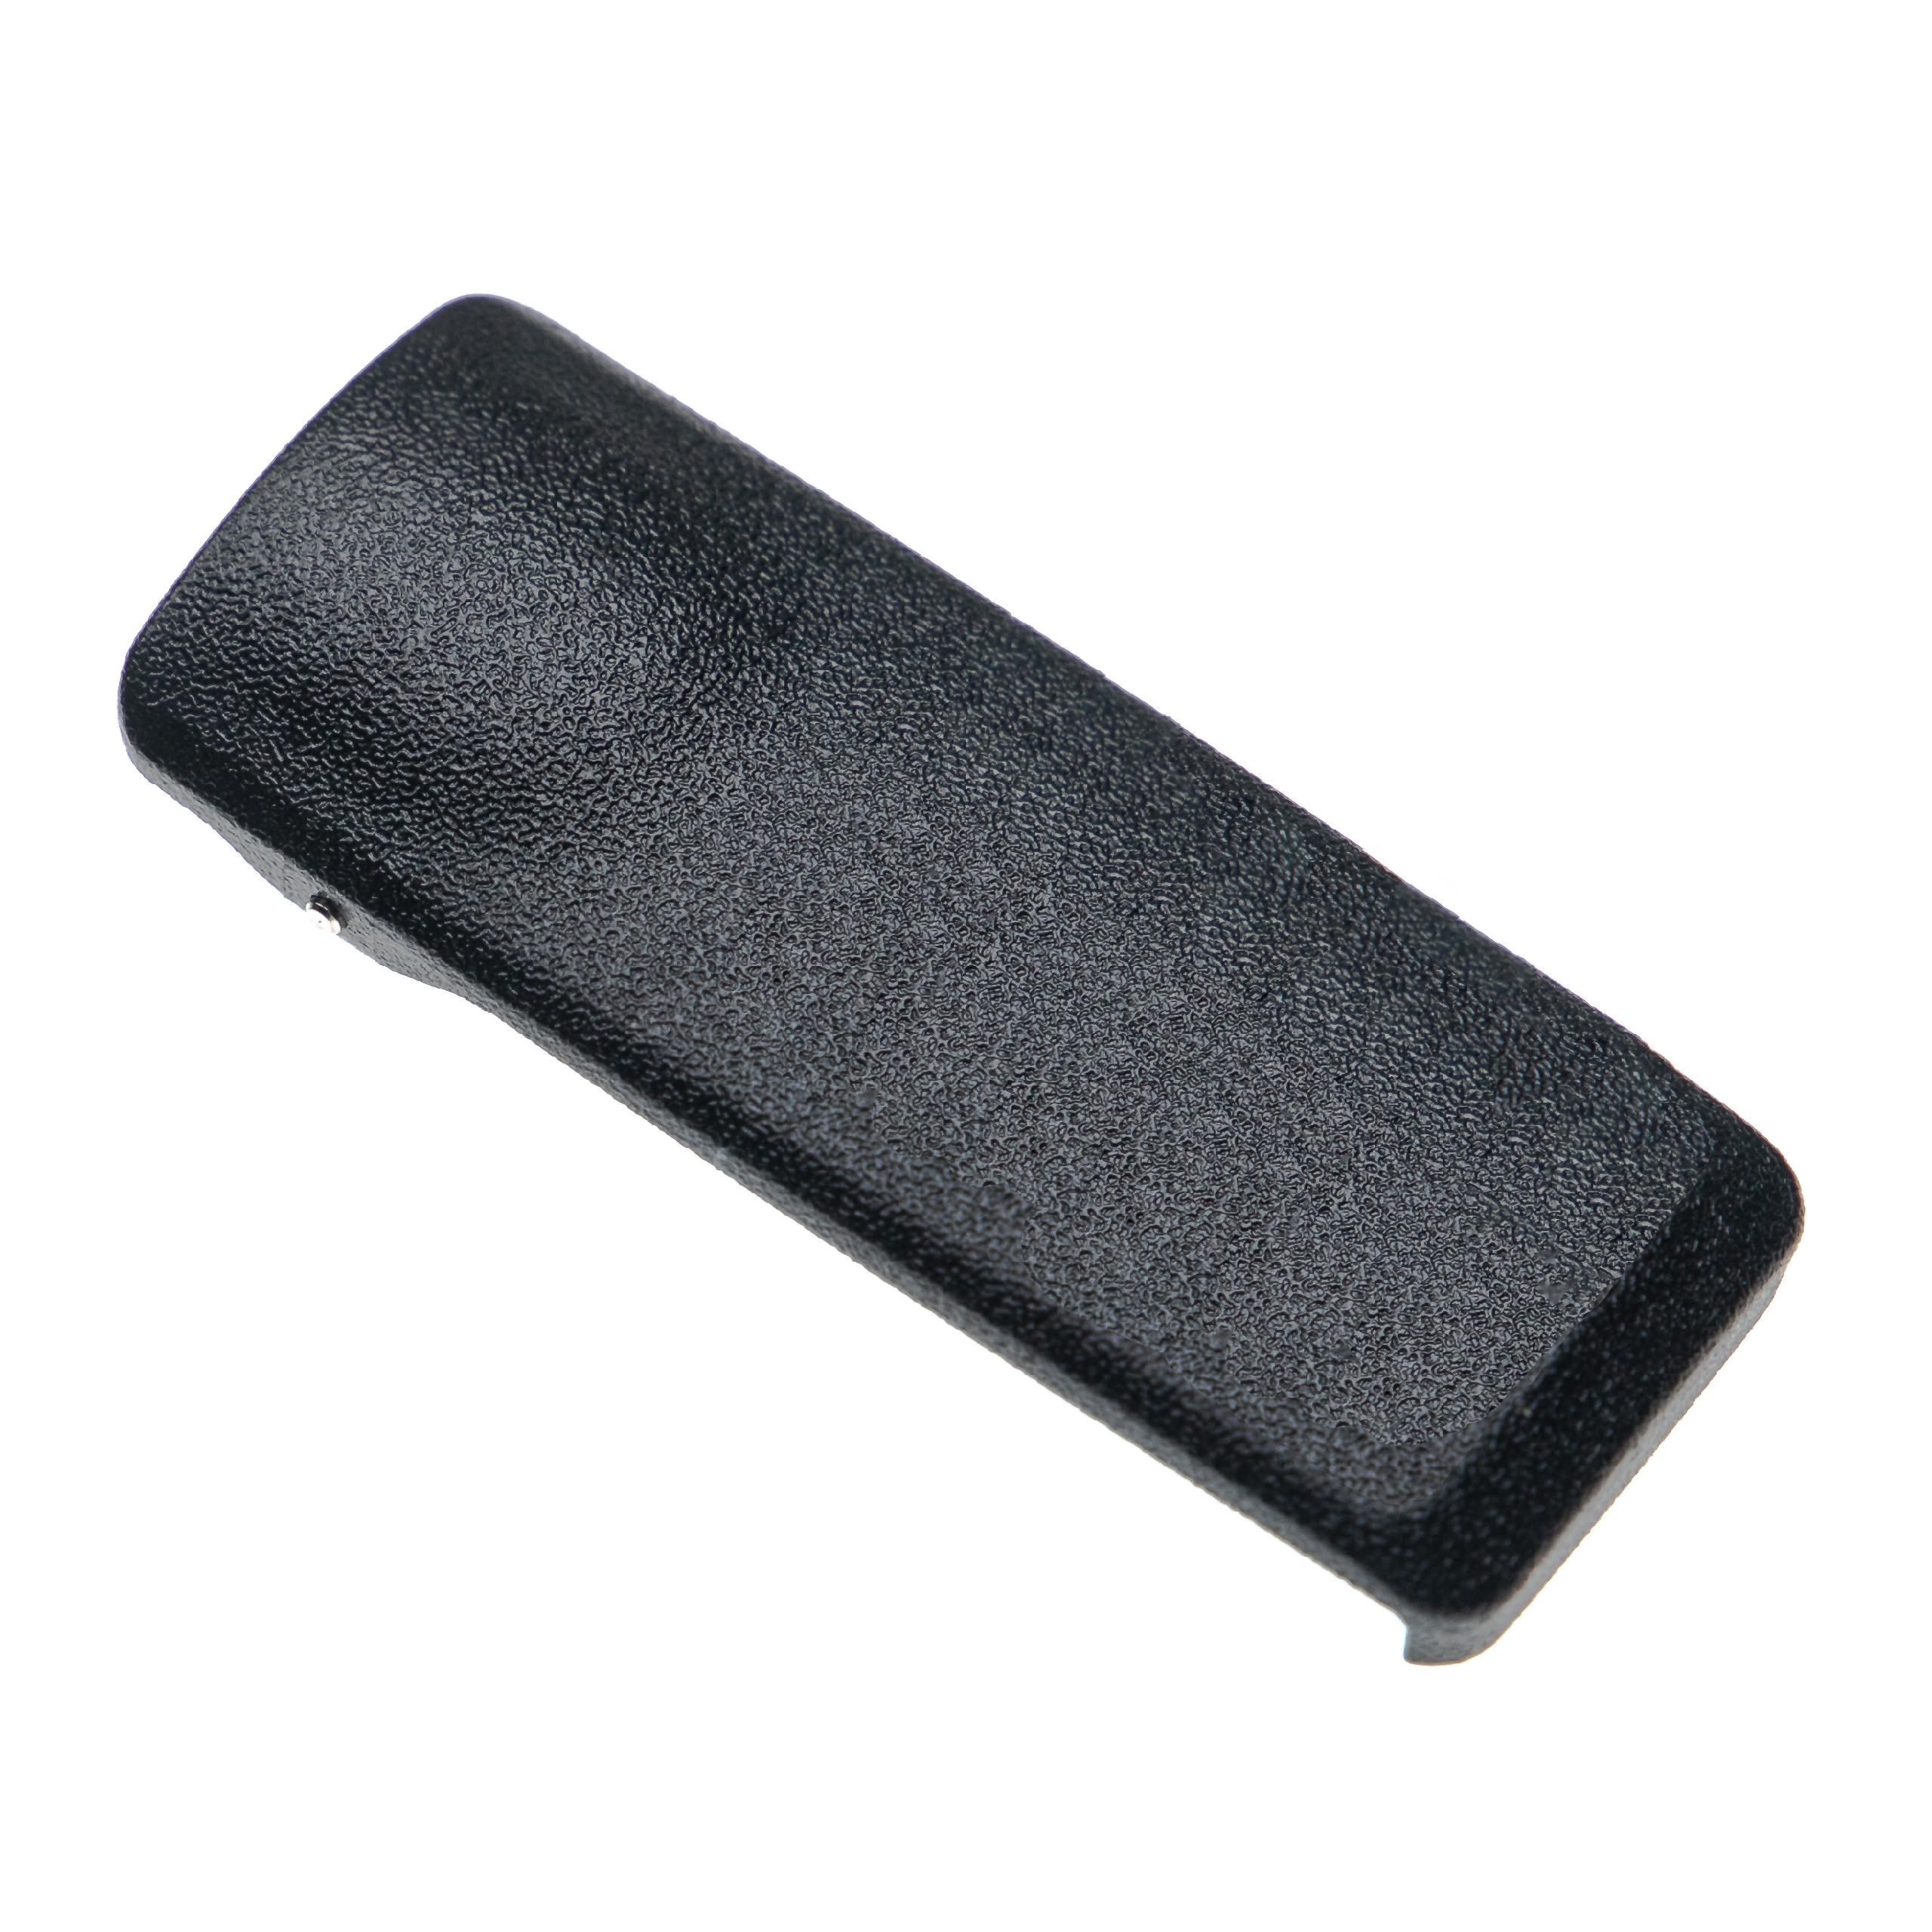 Gürtelclip als Ersatz für Motorola PMLN4651A Funkgerät - Kunststoff, Schwarz